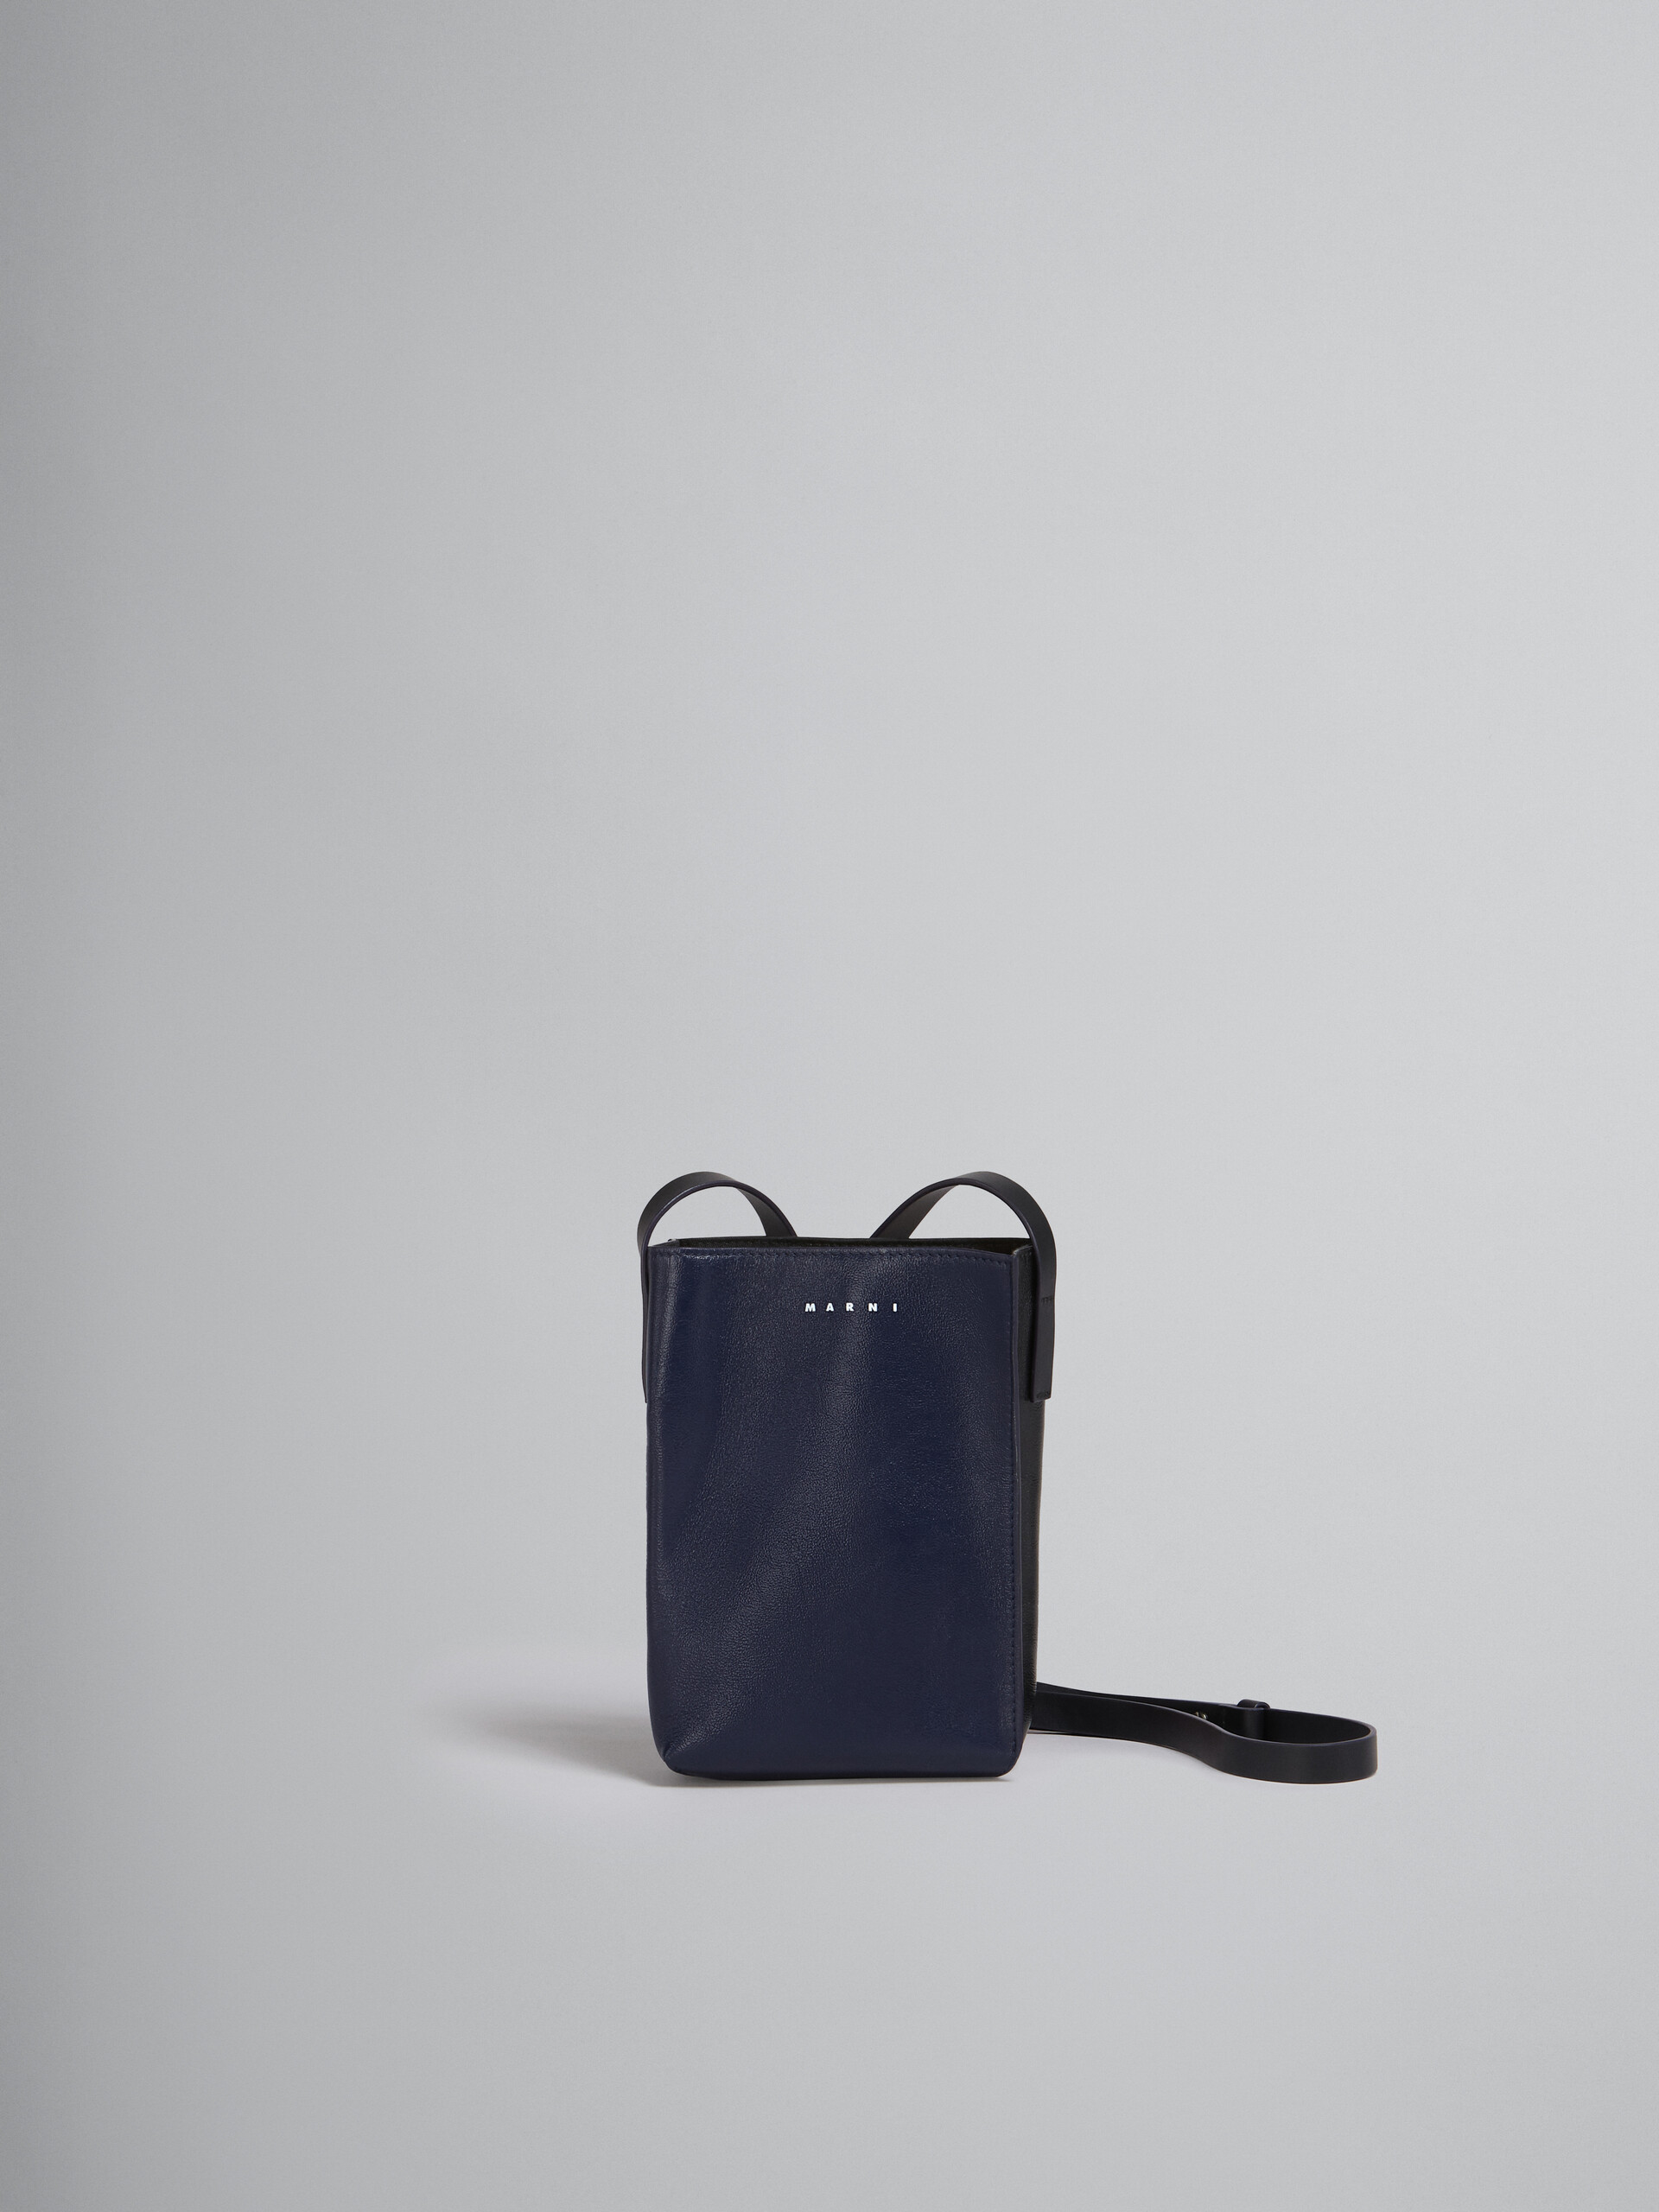 Sac MUSEO SOFT en cuir brillant bleu et noir - Sacs portés épaule - Image 1